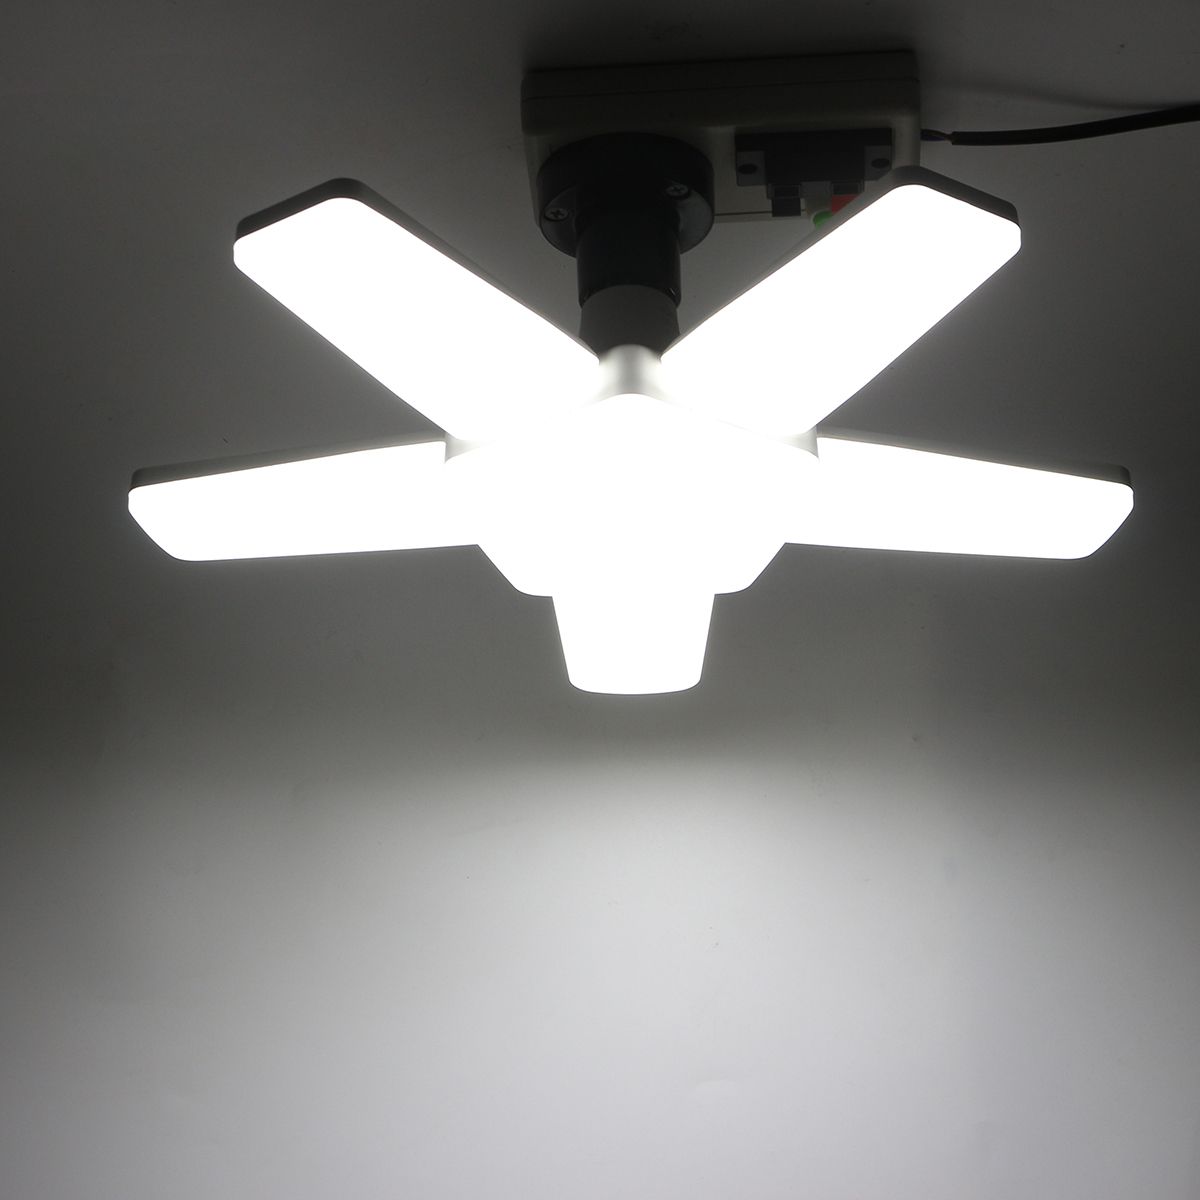 300W-E27-Deformable-LED-Garage-Light-Bulb-Foldable-5-Blade-Ceiling-Lamp-Workshop-Supermarket-Lightin-1627015